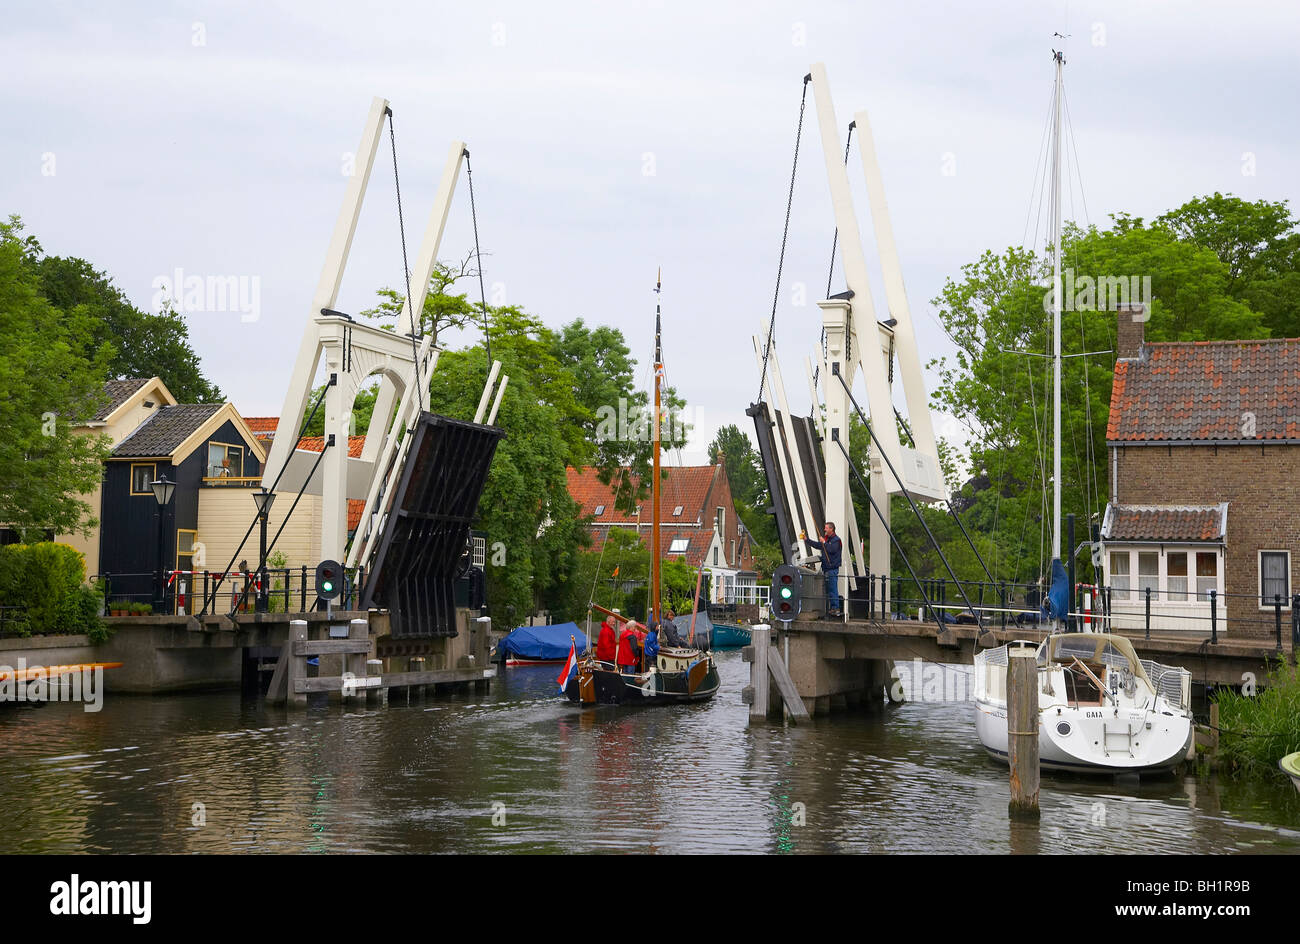 Un bateau à voile sur la rivière Vecht conduisant au-delà d'un pont à bascule, Pays-Bas, Europe Banque D'Images